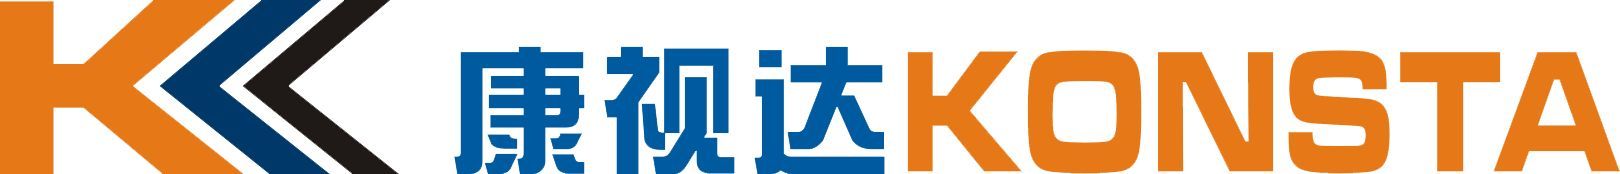 Shenzhen Konsta Electronic Co., Ltd logo